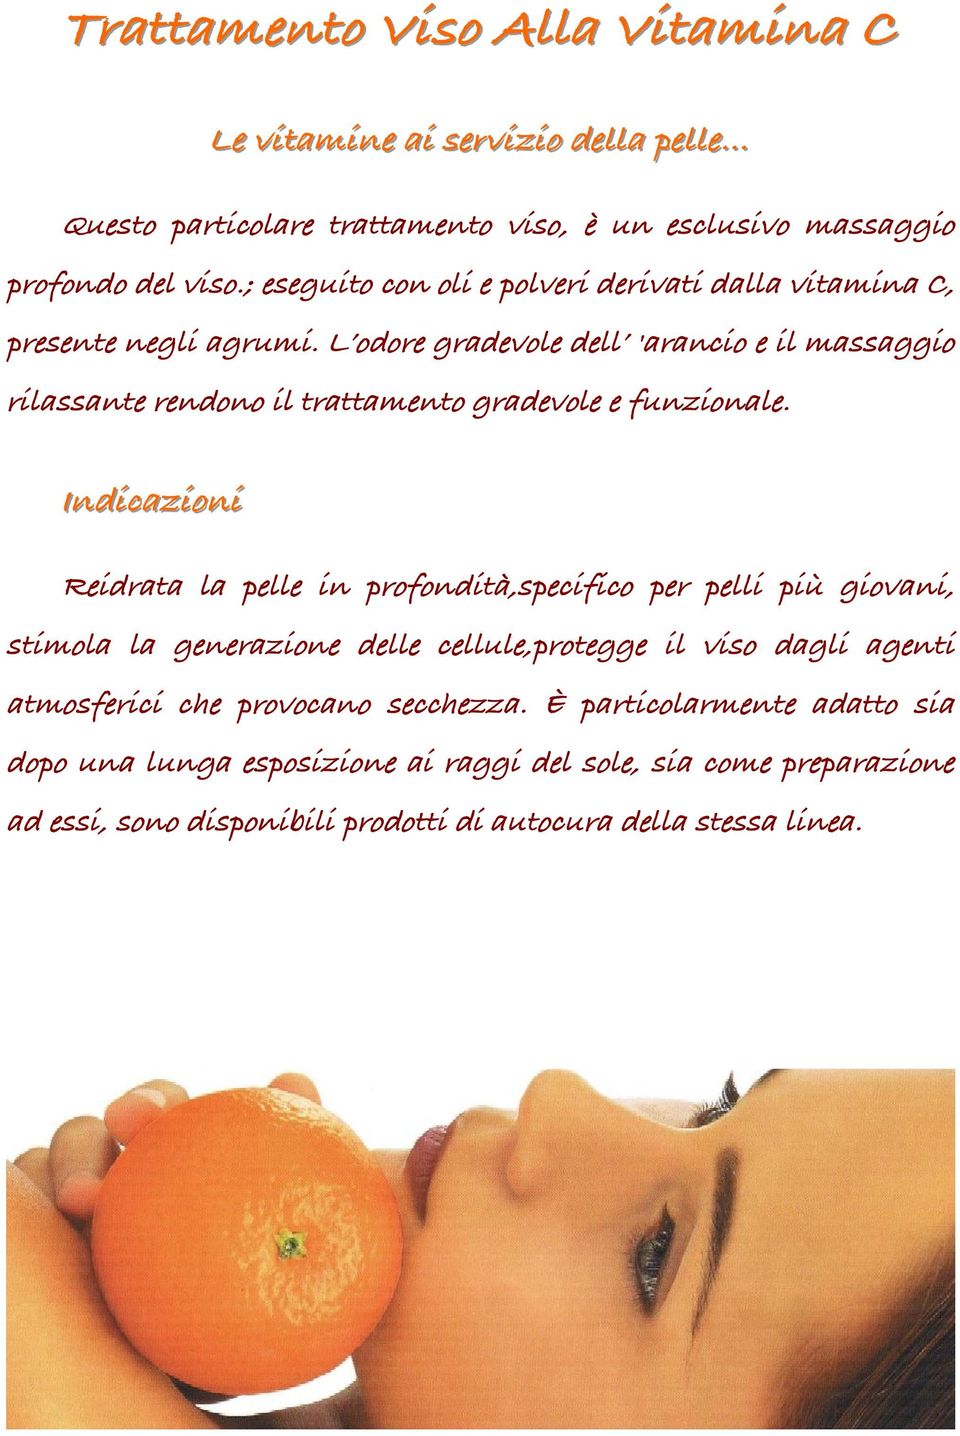 L odore gradevole dell 'arancio e il massaggio rilassante rendono il trattamento gradevole e funzionale.